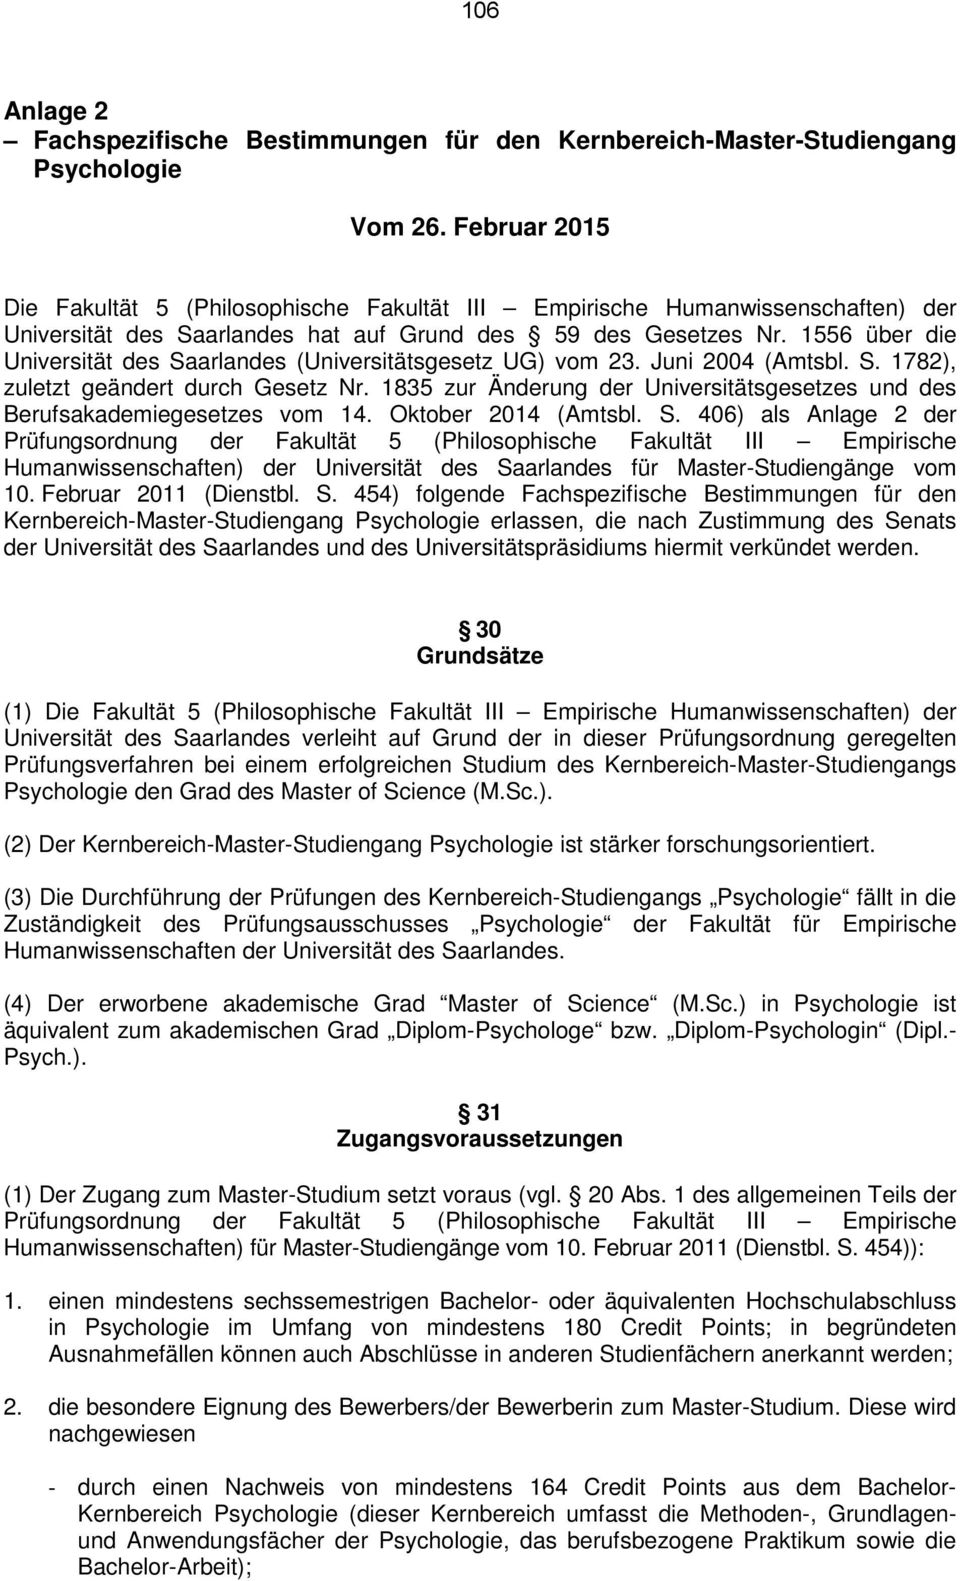 1556 über die Universität des Saarlandes (Universitätsgesetz UG) vom 23. Juni 2004 (Amtsbl. S. 1782), zuletzt geändert durch Gesetz Nr.